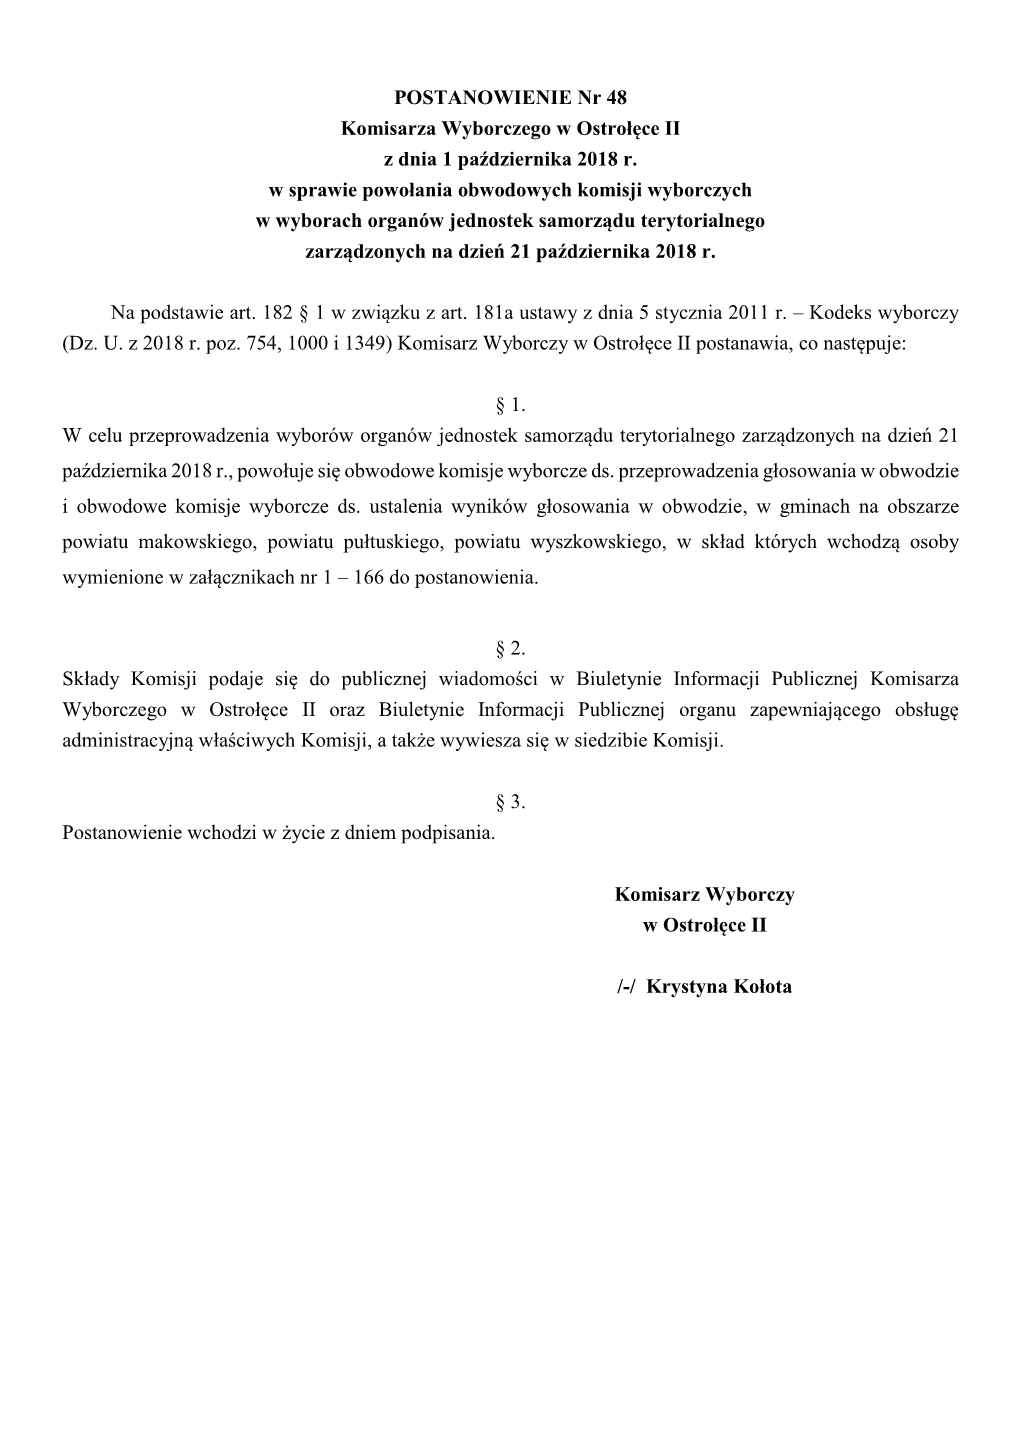 POSTANOWIENIE Nr 48 Komisarza Wyborczego W Ostrołęce II Z Dnia 1 Października 2018 R. W Sprawie Powołania Obwodowych Komisji